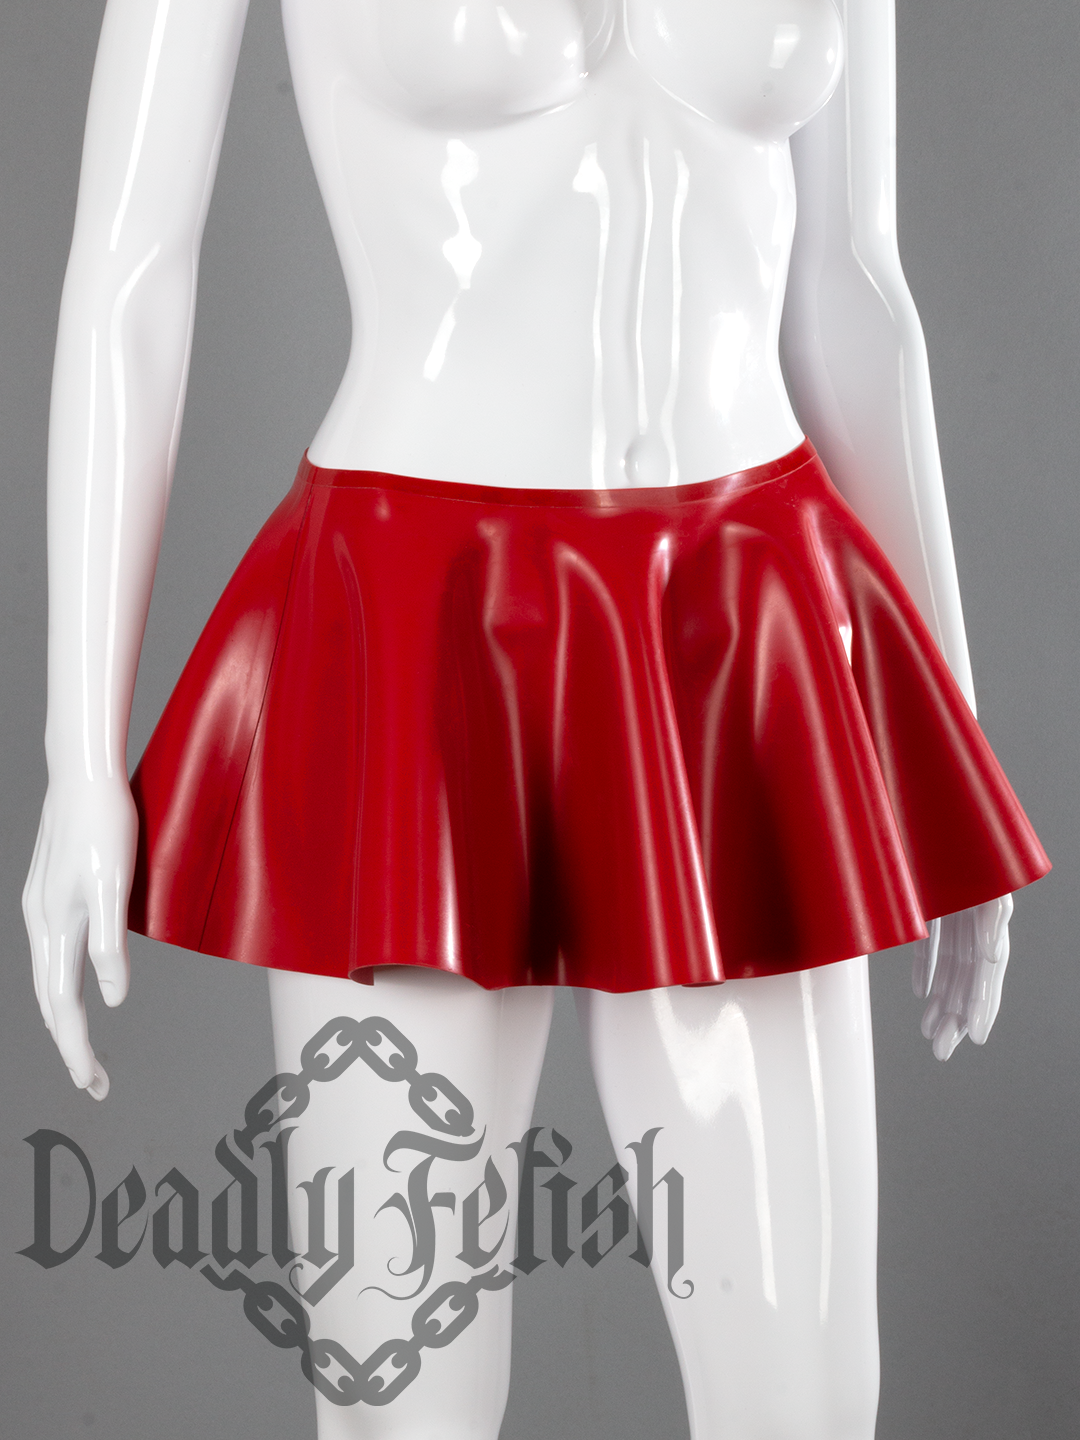 Deadly Fetish Latex: Skirt #12